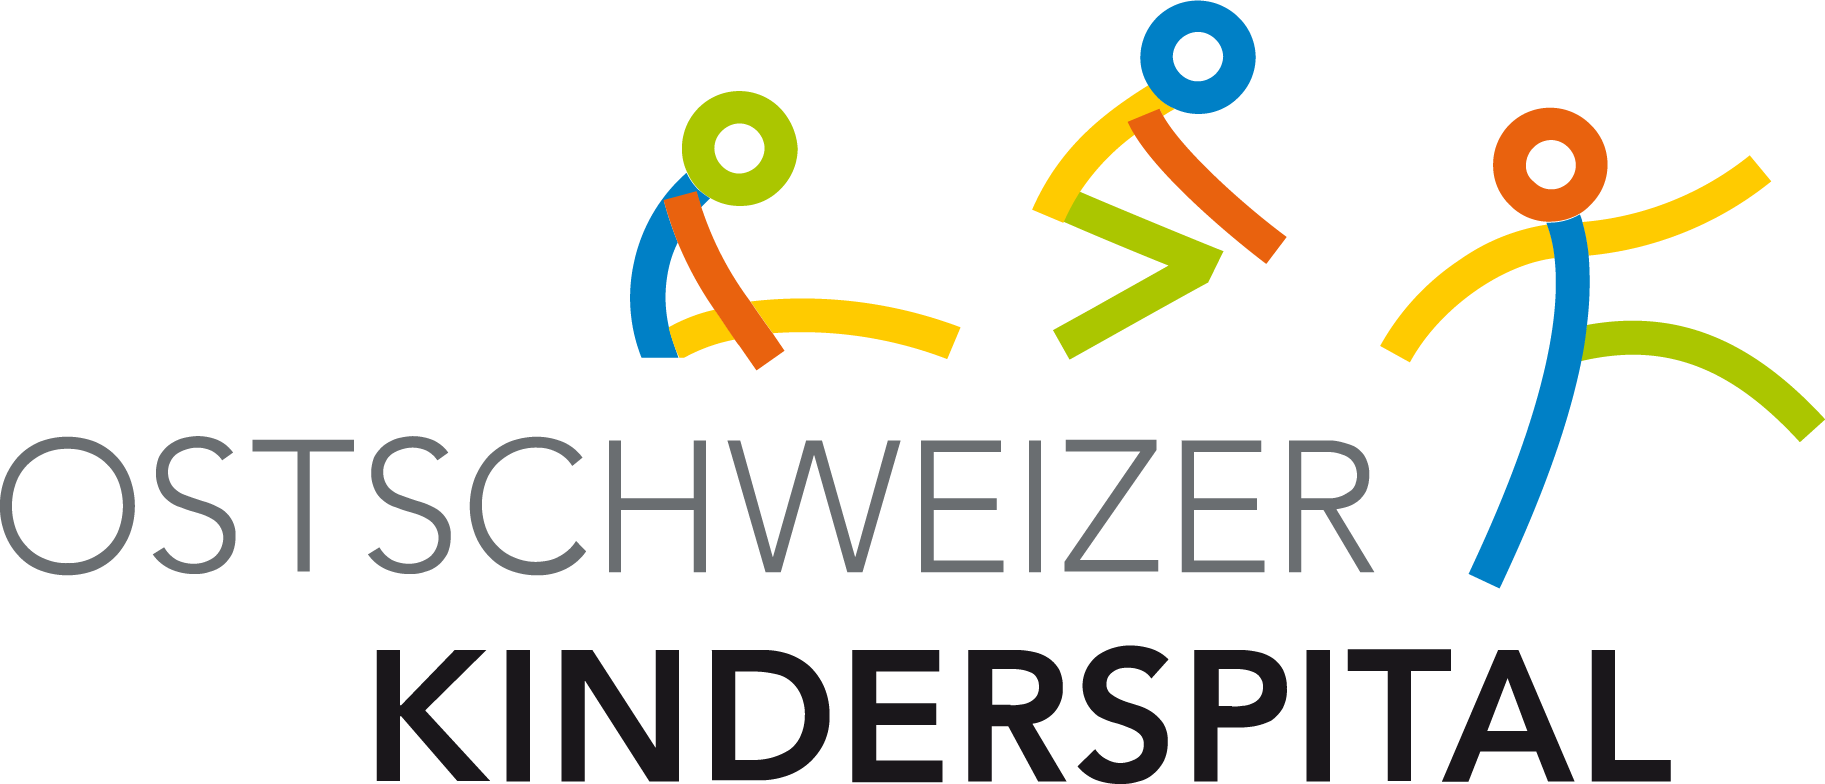 ostschweizer-kinderspital-logo.png